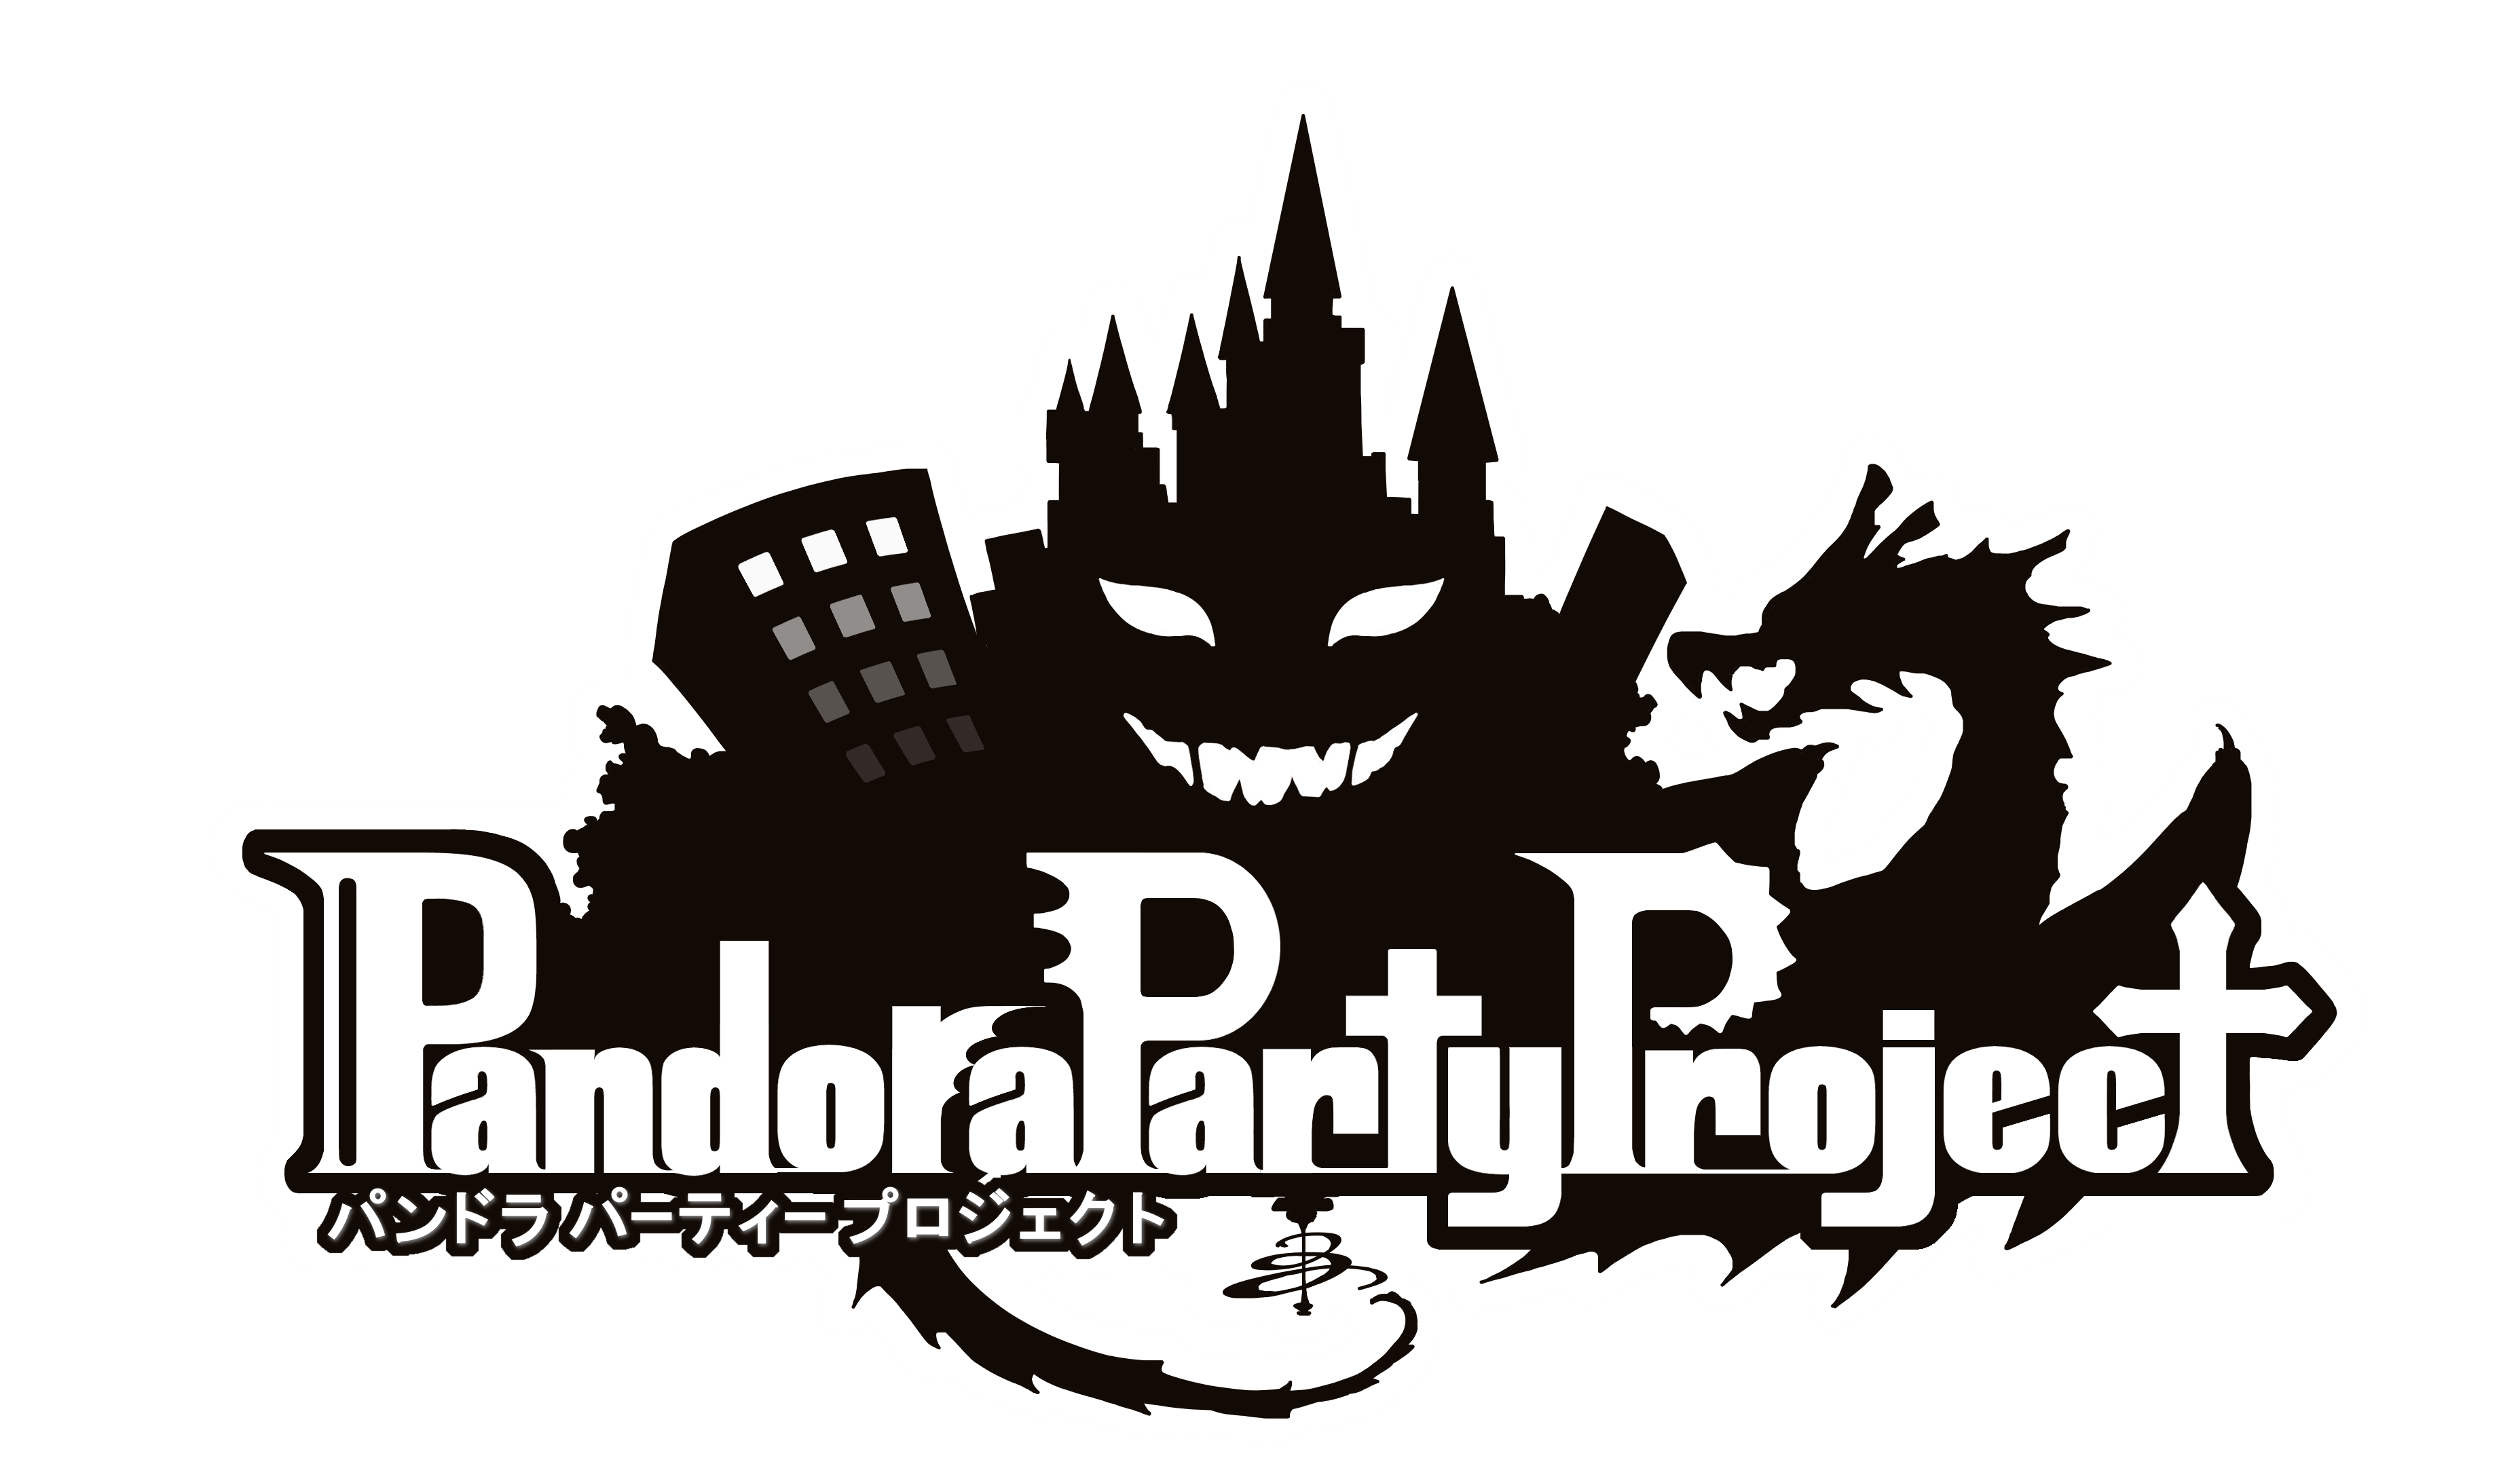 Pandora Party Project Q A 010 Re Version